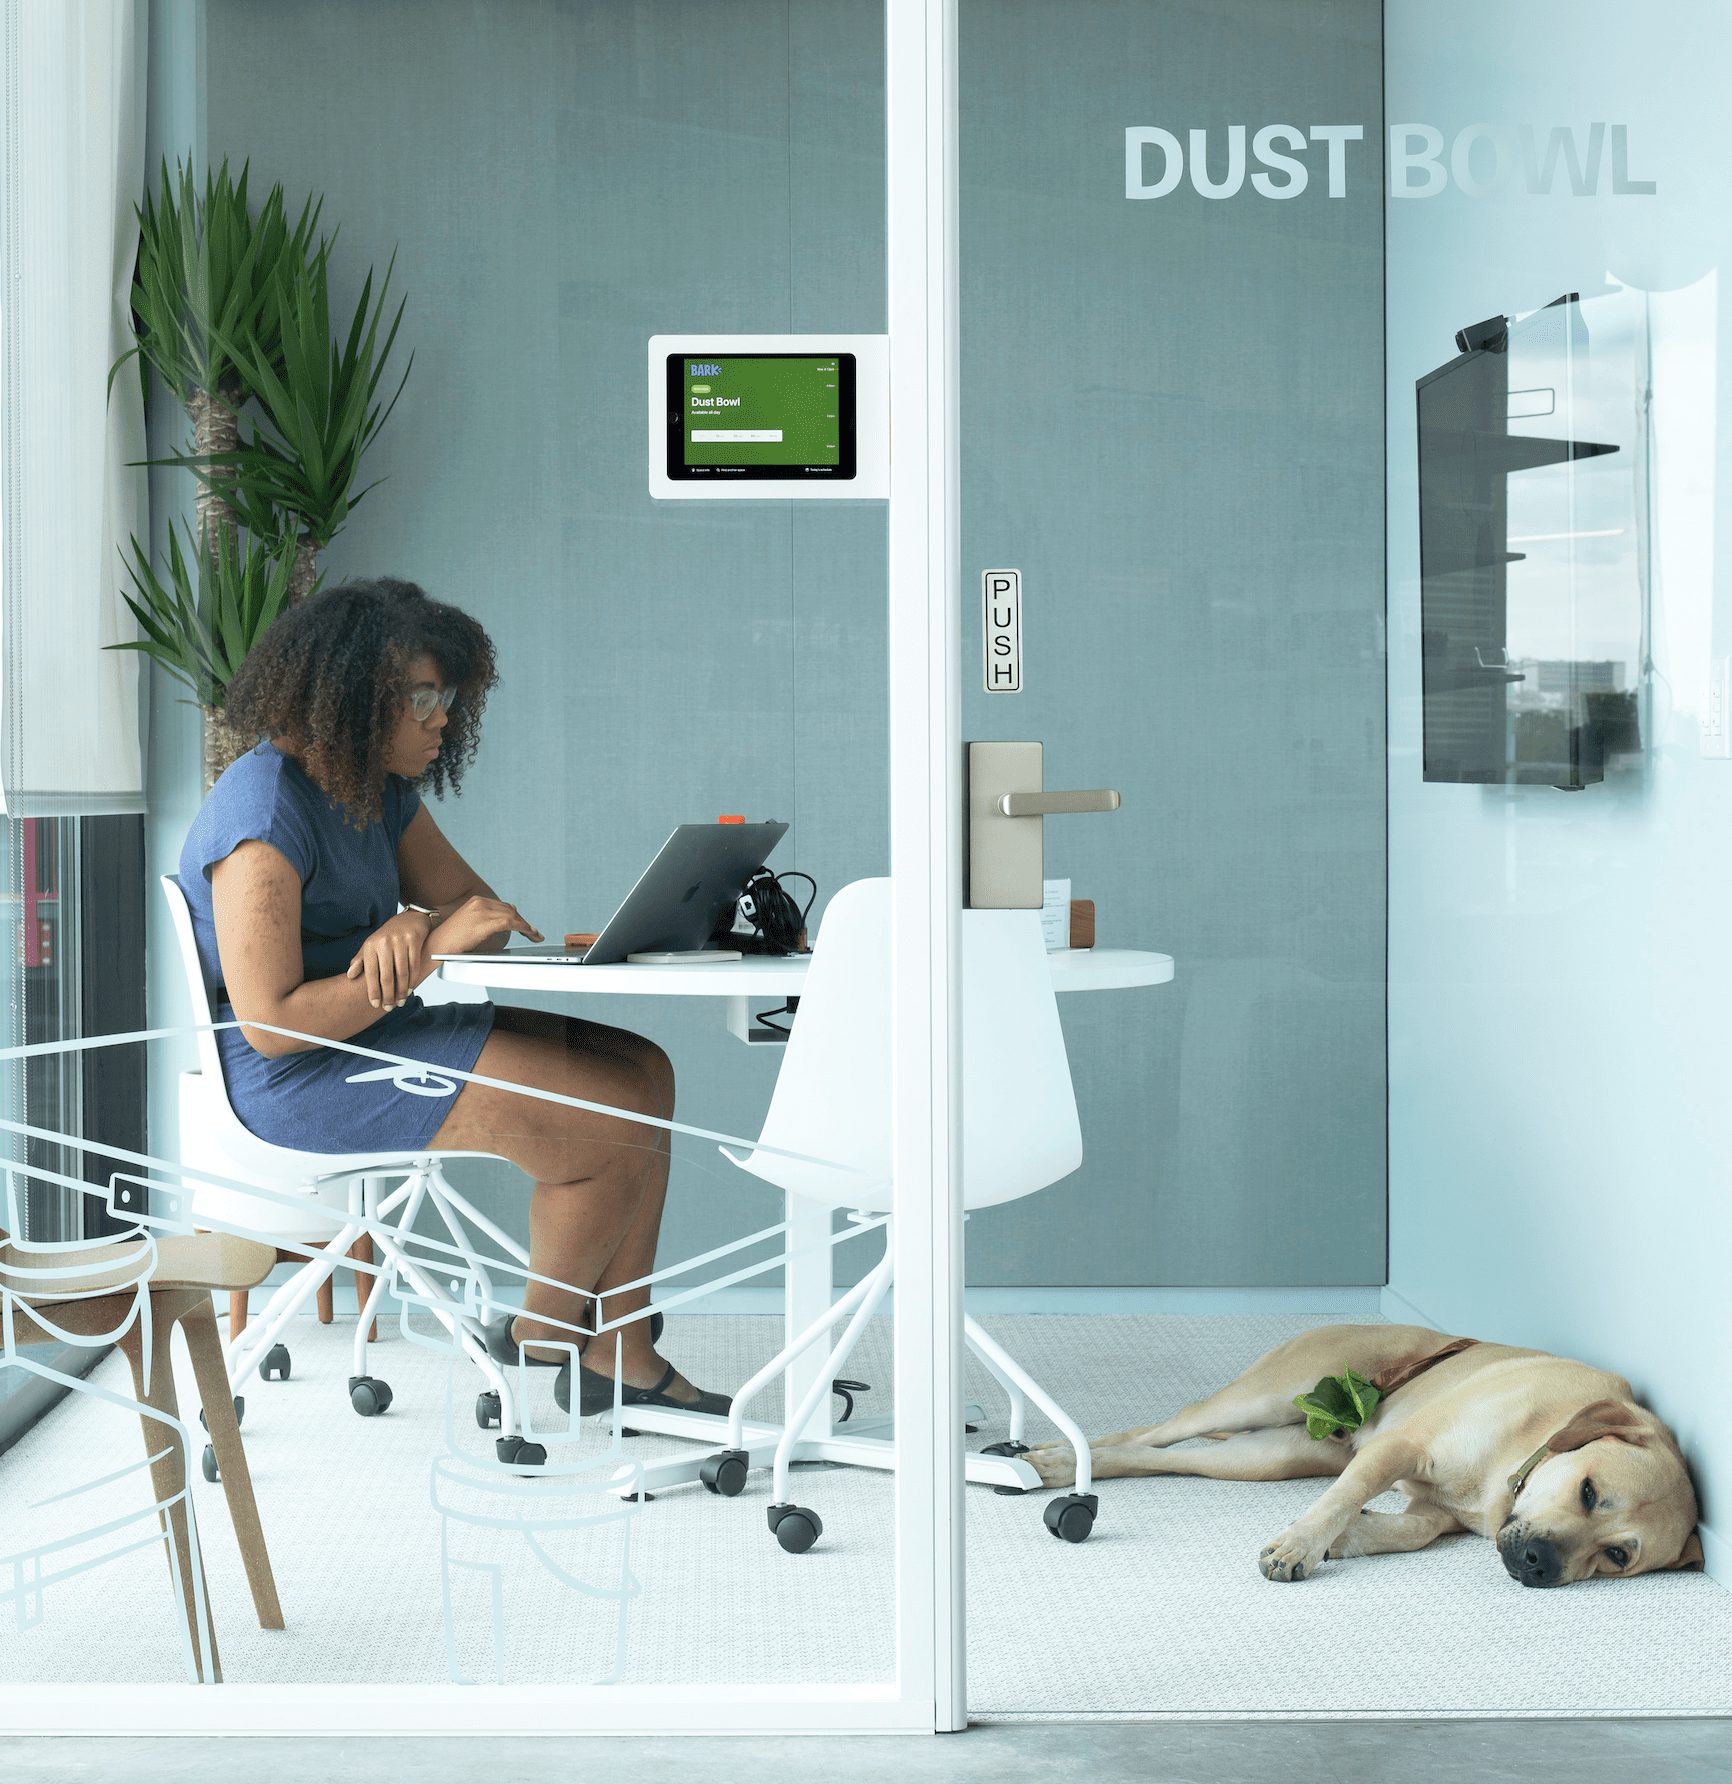 Dog-friendly workplace, Britni Stone, NBBJ, OnOffice magazine